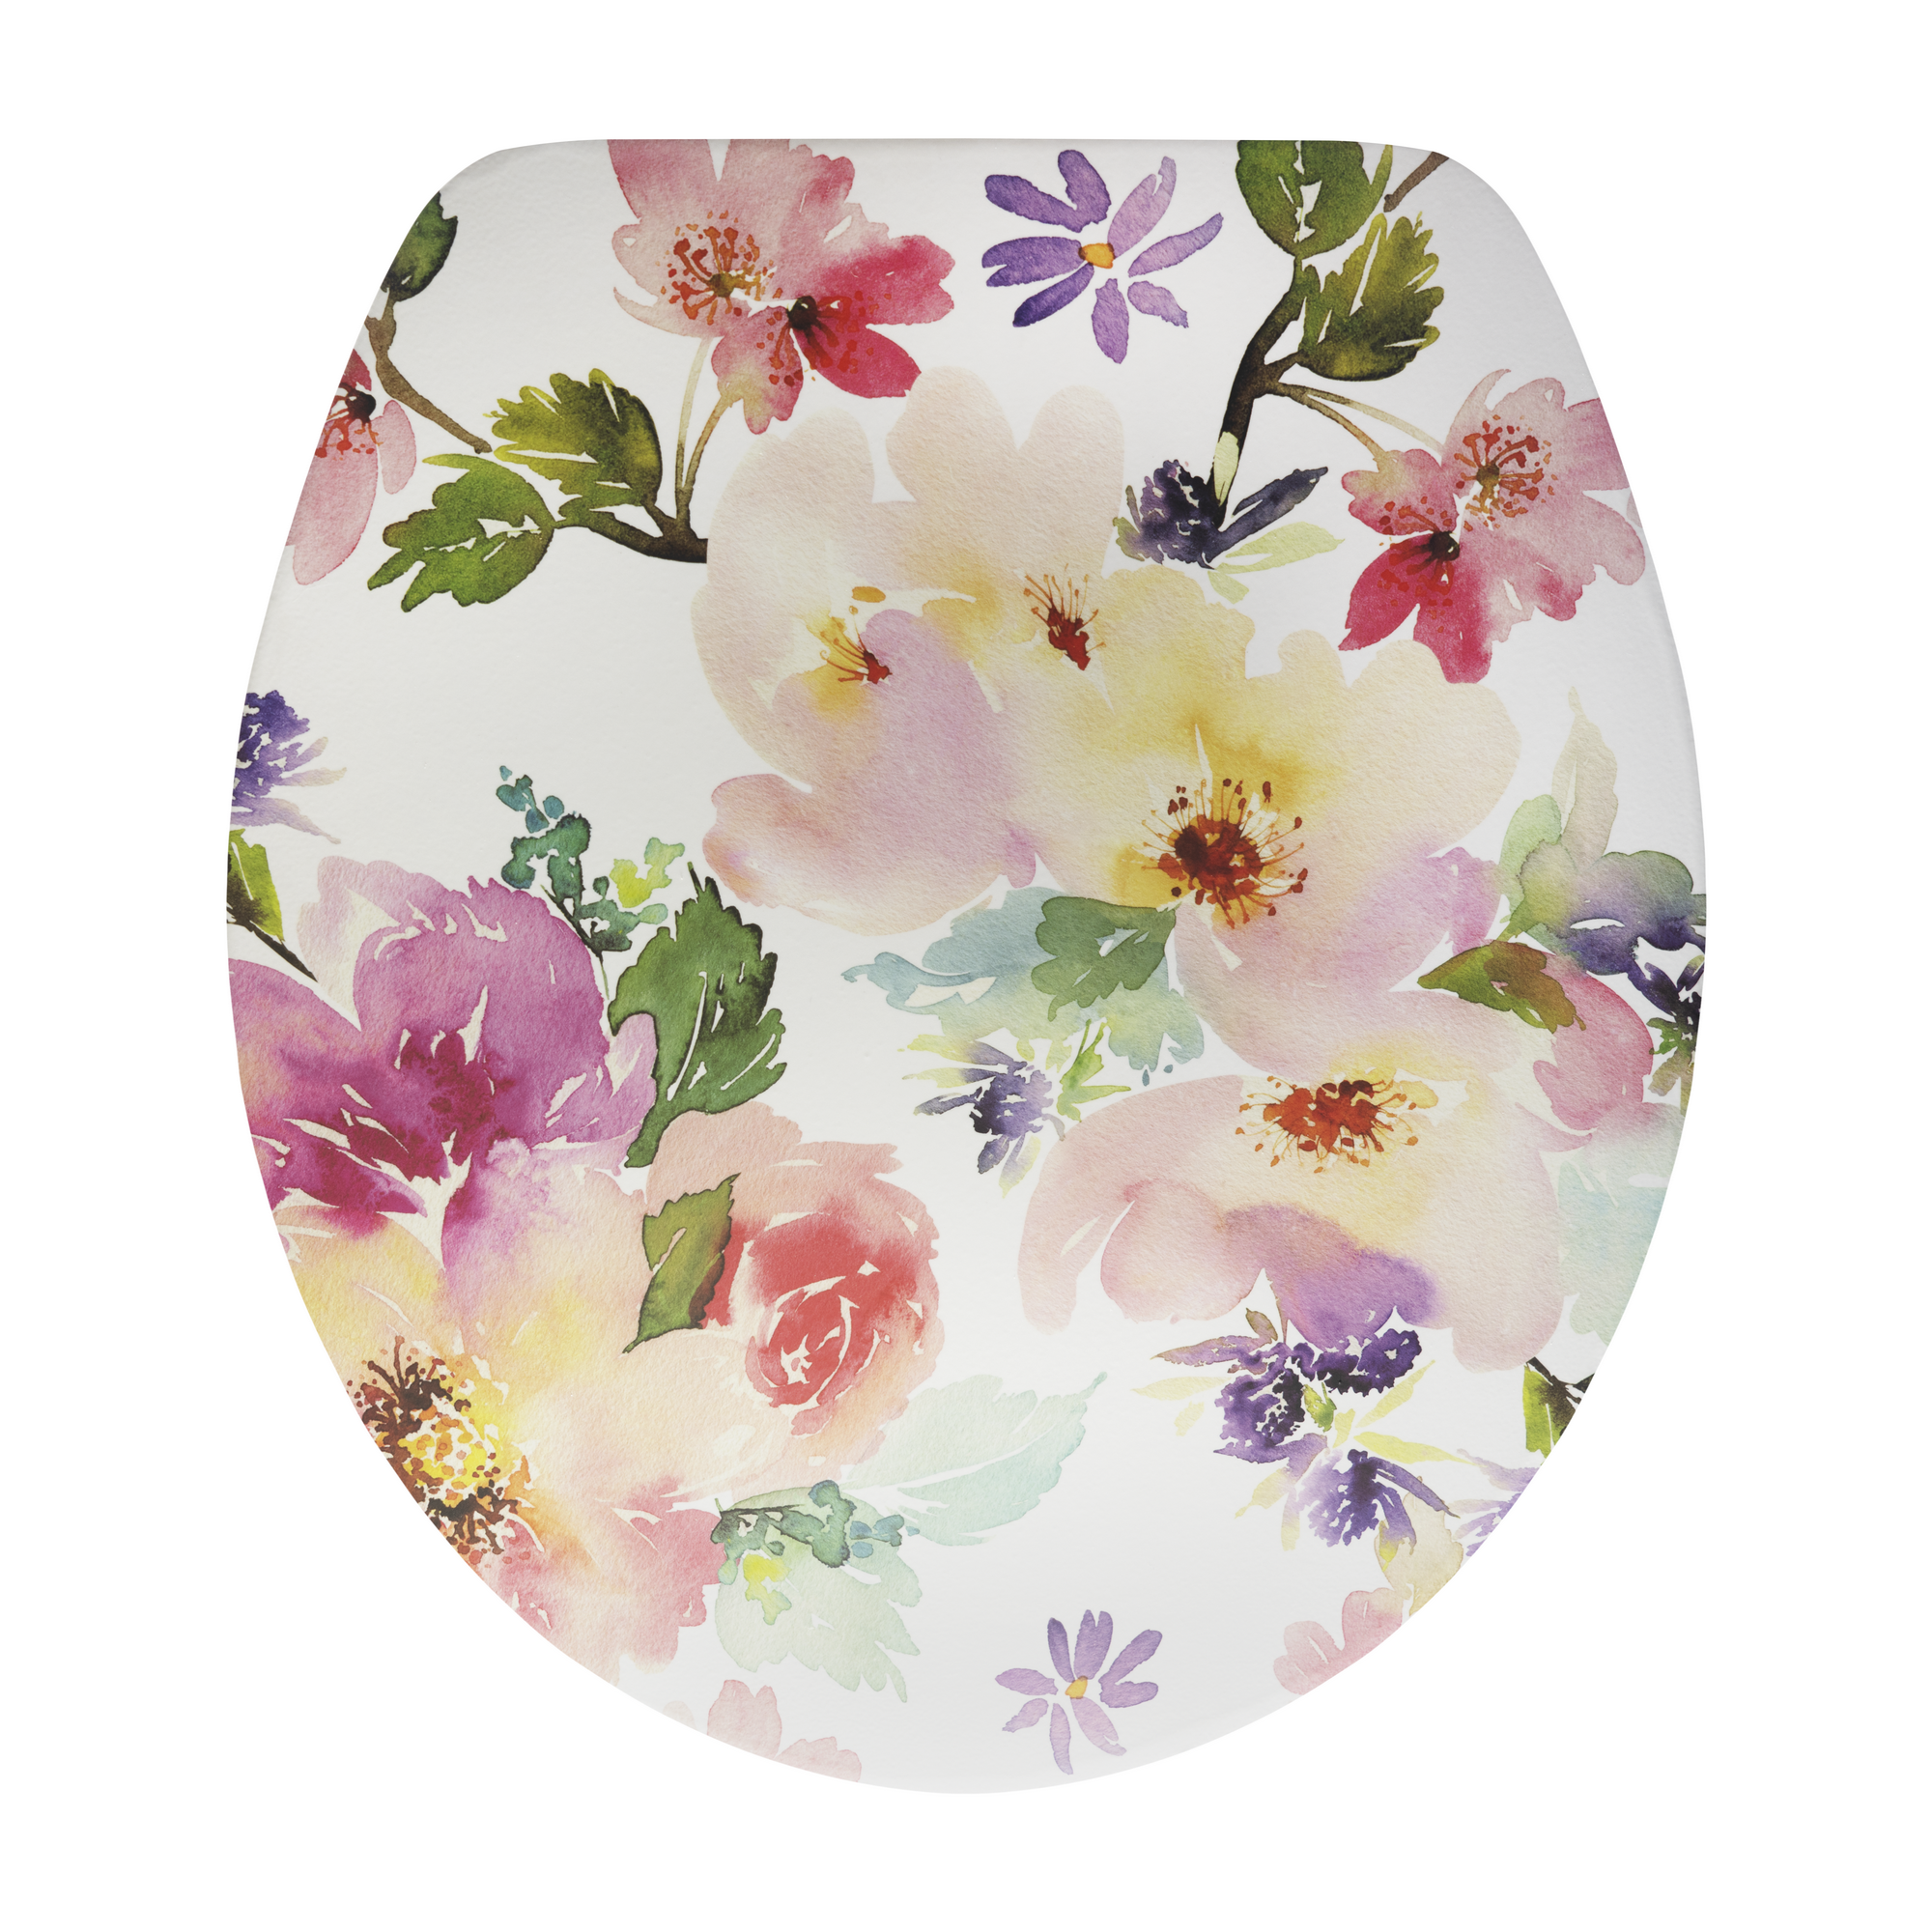 WC-Sitz 'Blumen' mit Absenkautomatik und SoftTouch-Oberfläche bunt + product picture